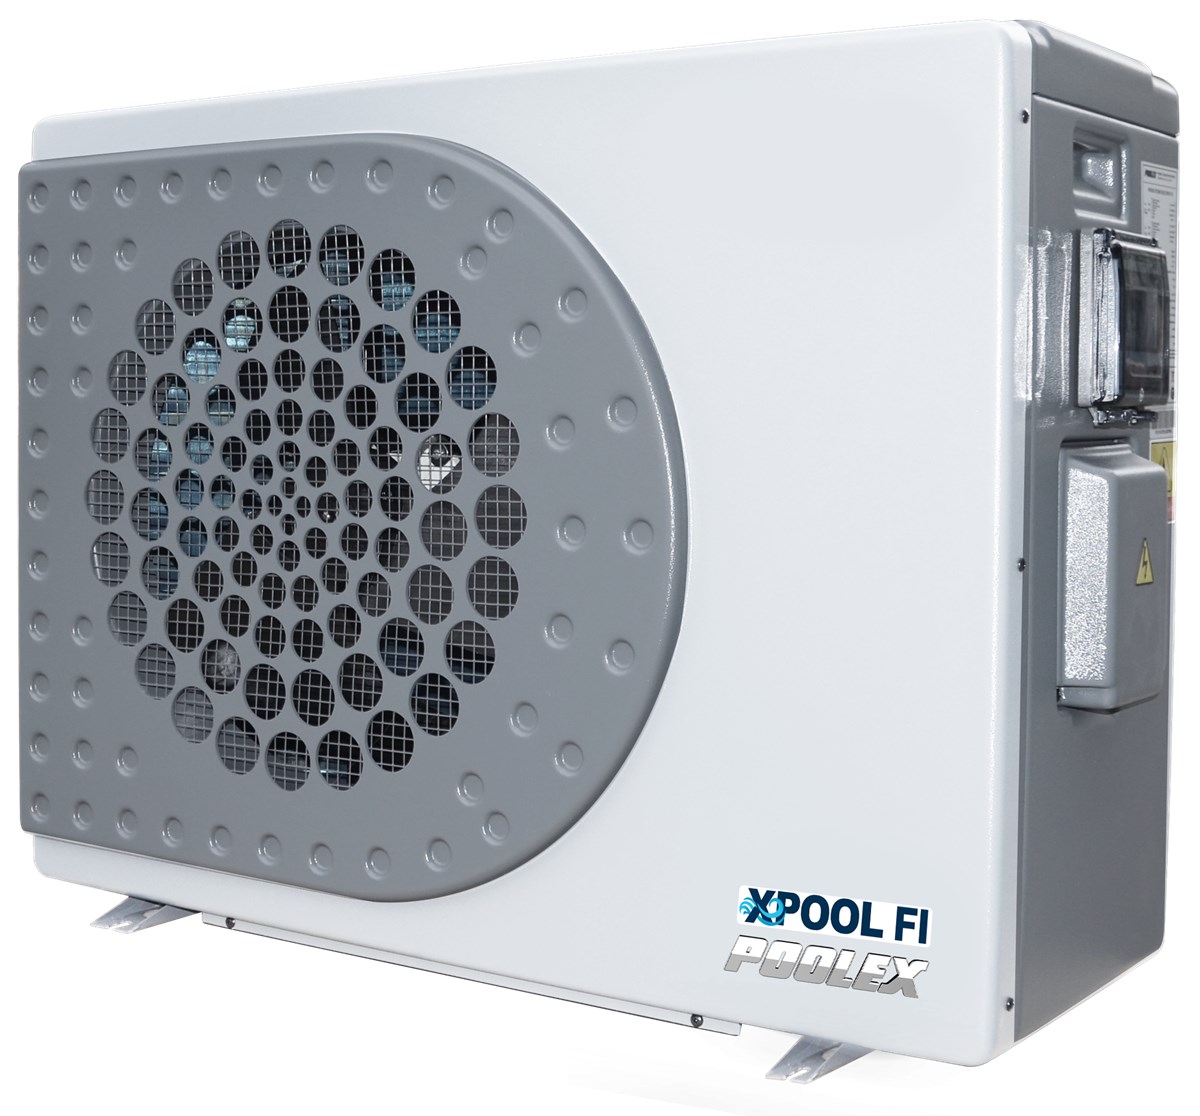 Pompa di calore Poolex XPool Fi